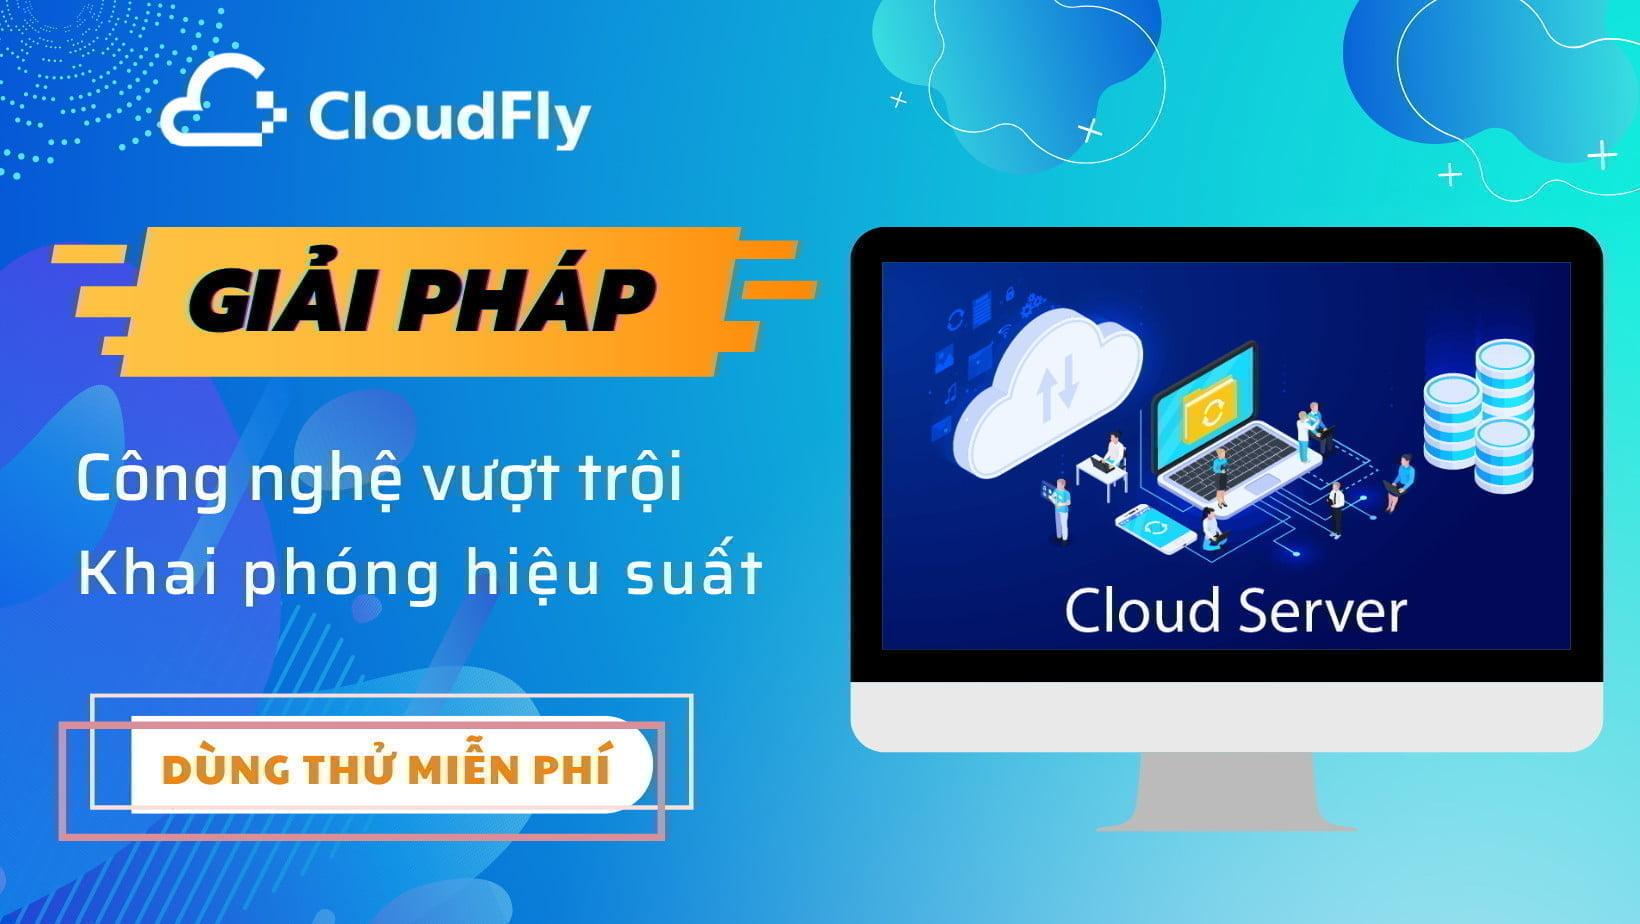 cloud server giá rẻ chất lượng tại cloudfly